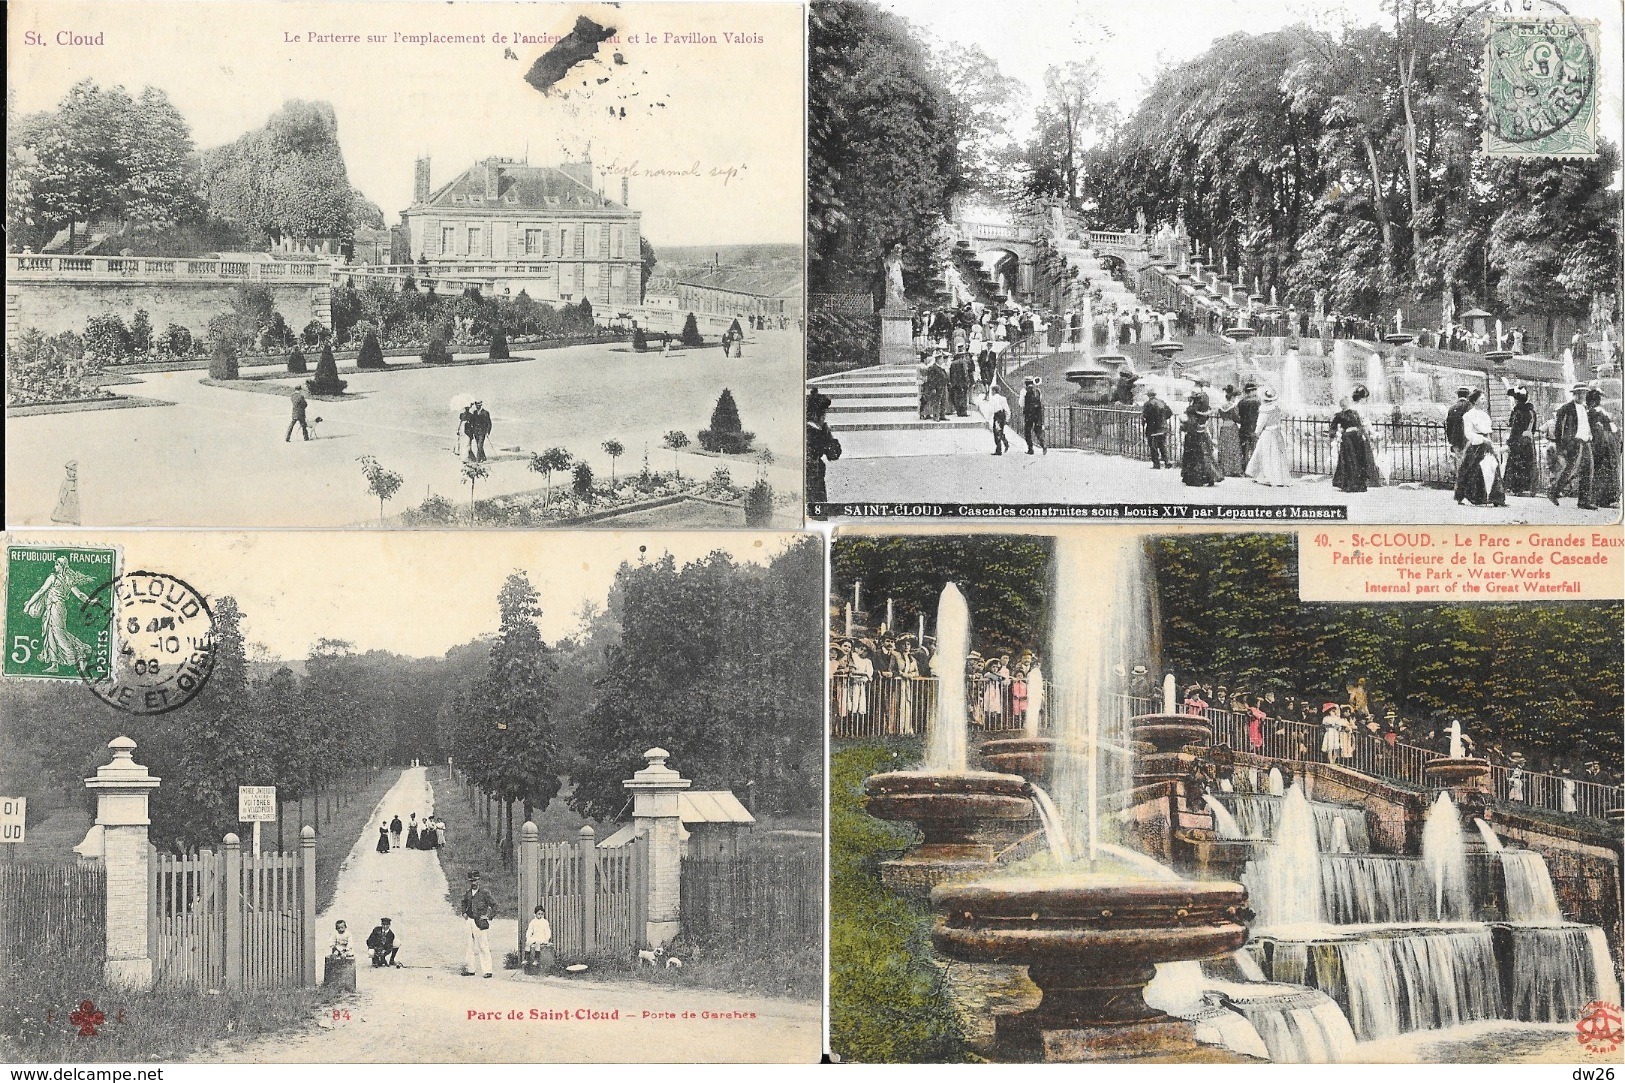 Lot n° 99 - 100 cartes du département Seine-et-Oise (Hauts de Seine 92) - Villes, villages, parcs, quelques animations